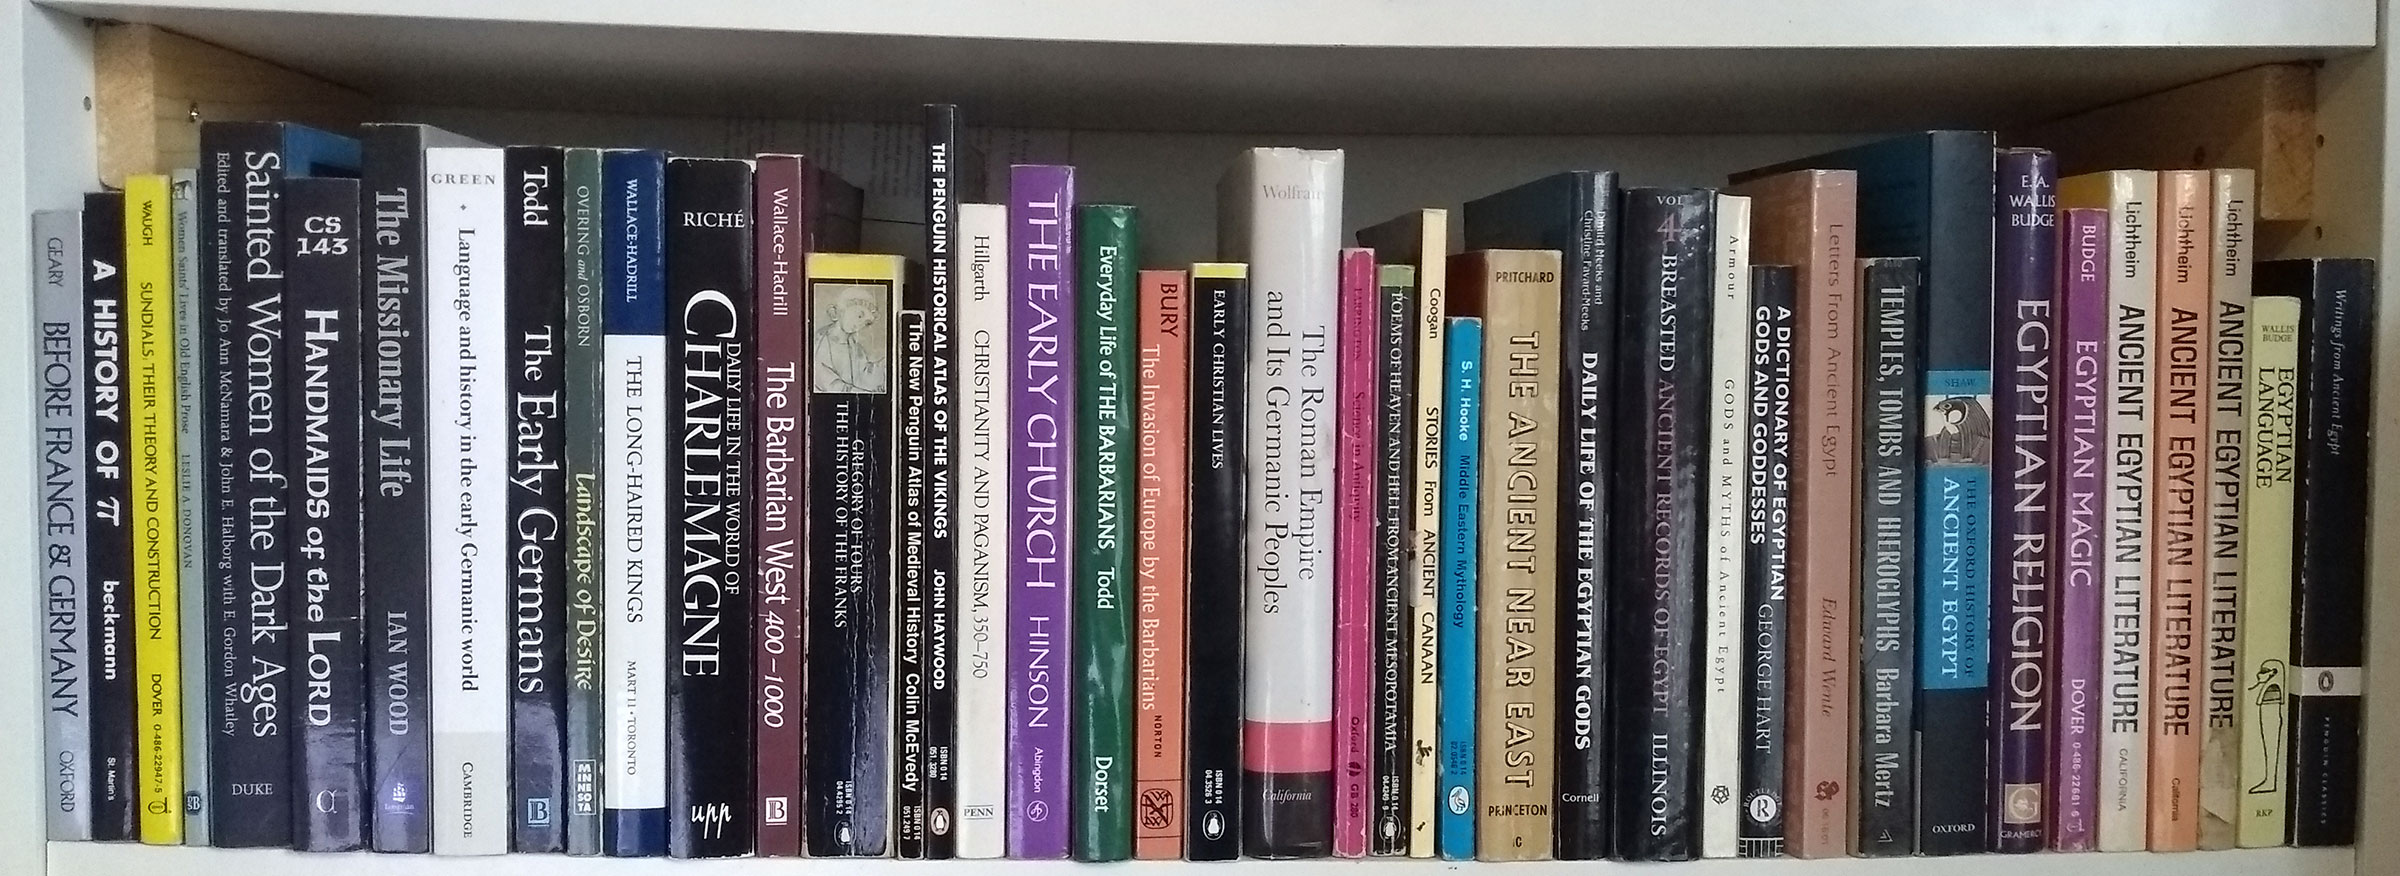 Bourland Library Shelf 1